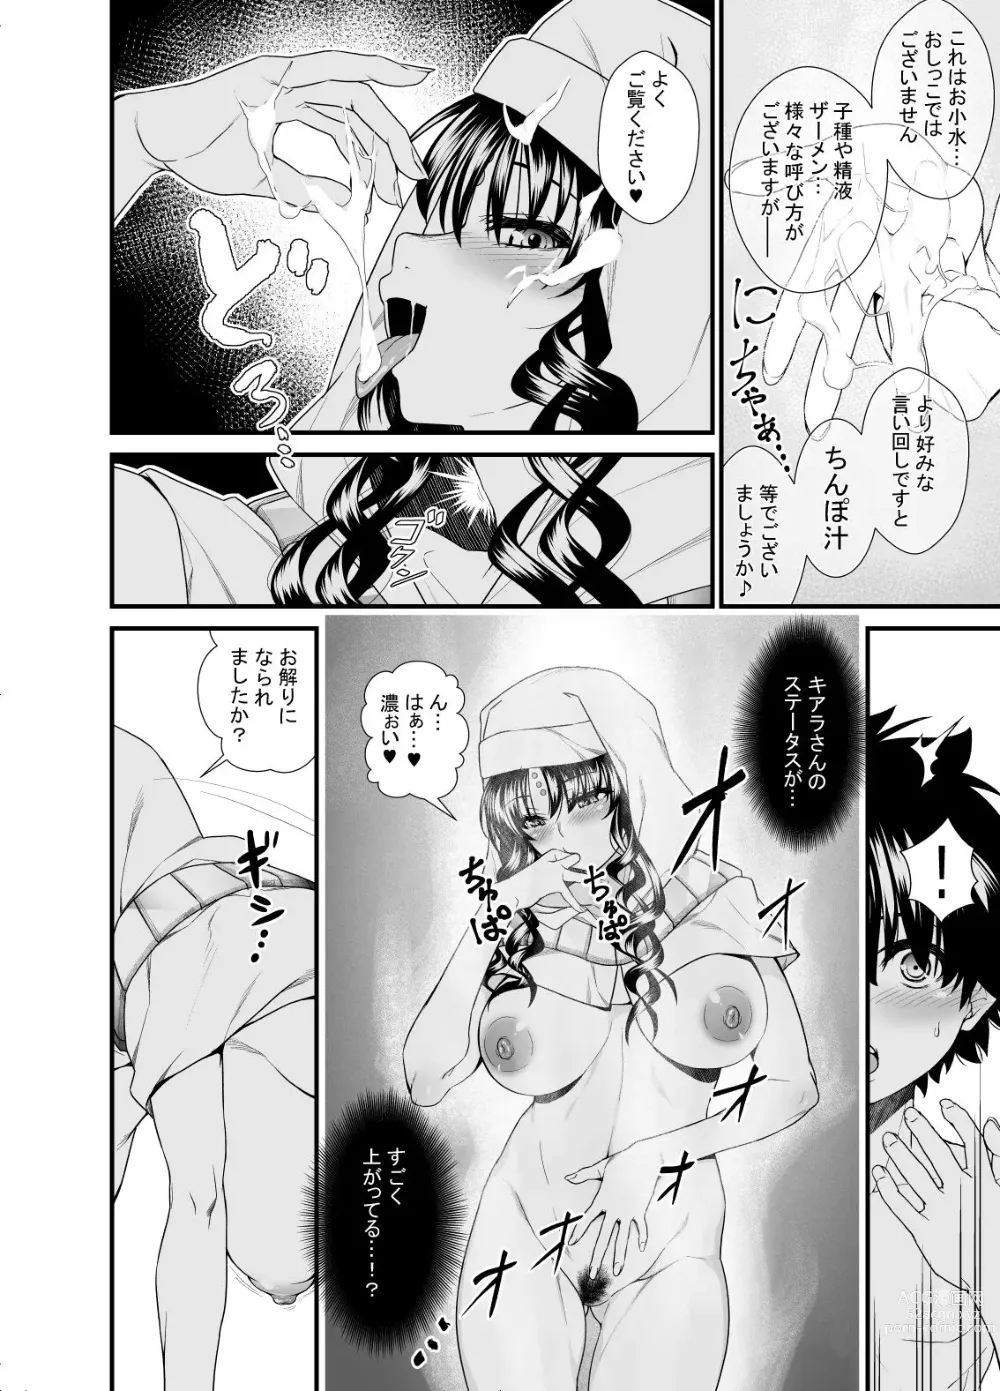 Page 4 of doujinshi OneShota Manga #01b